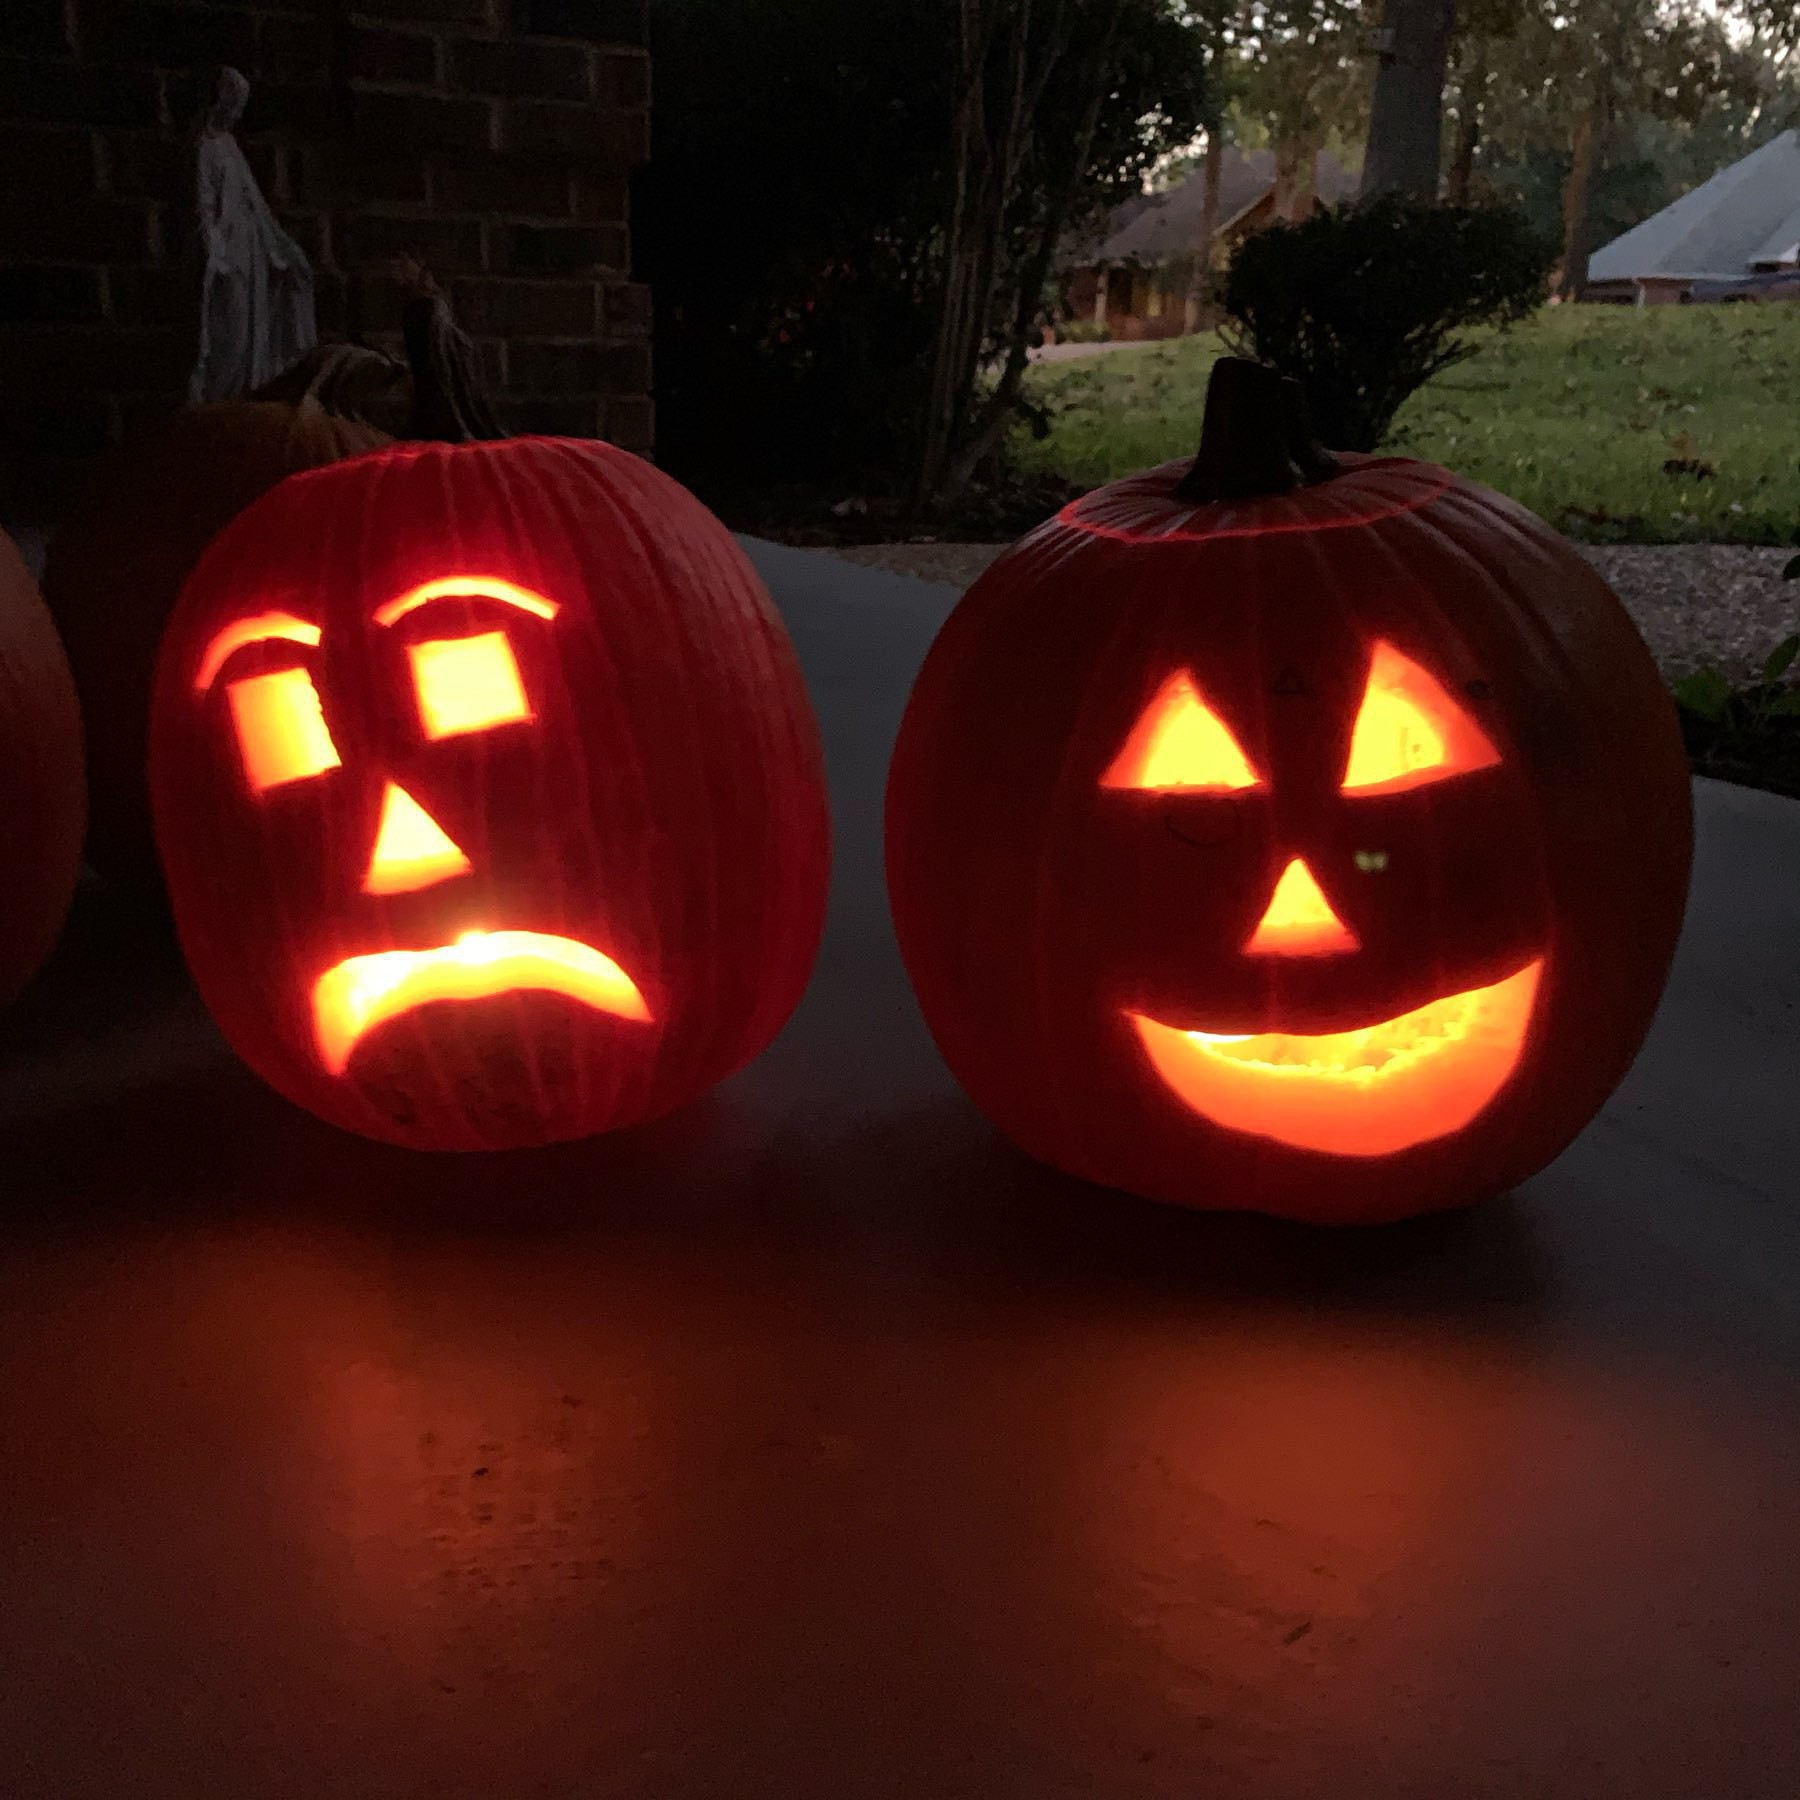 Carved pumpkins lit